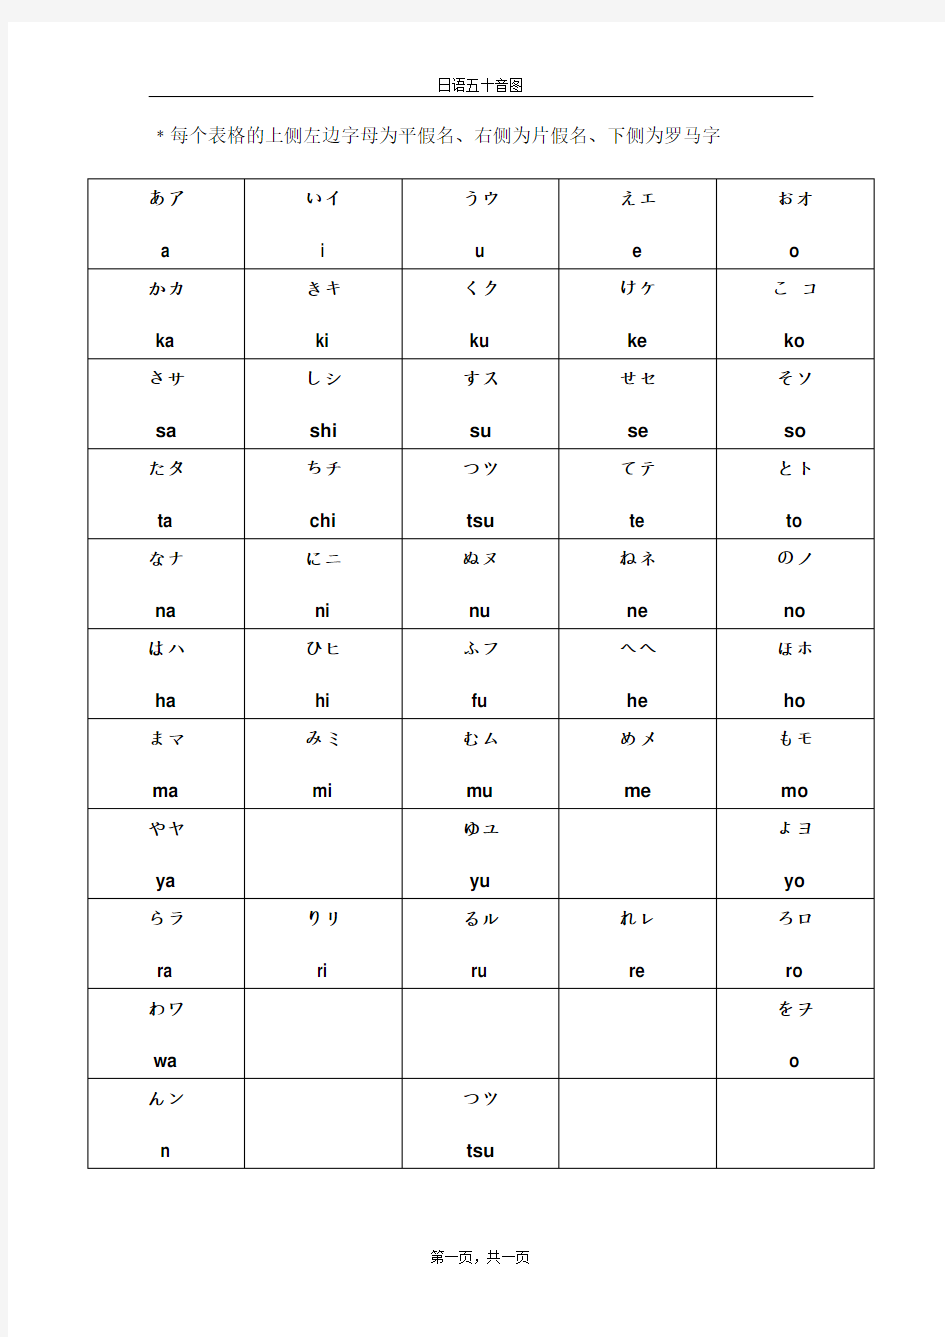 日语五十音图与罗马字发音对照表